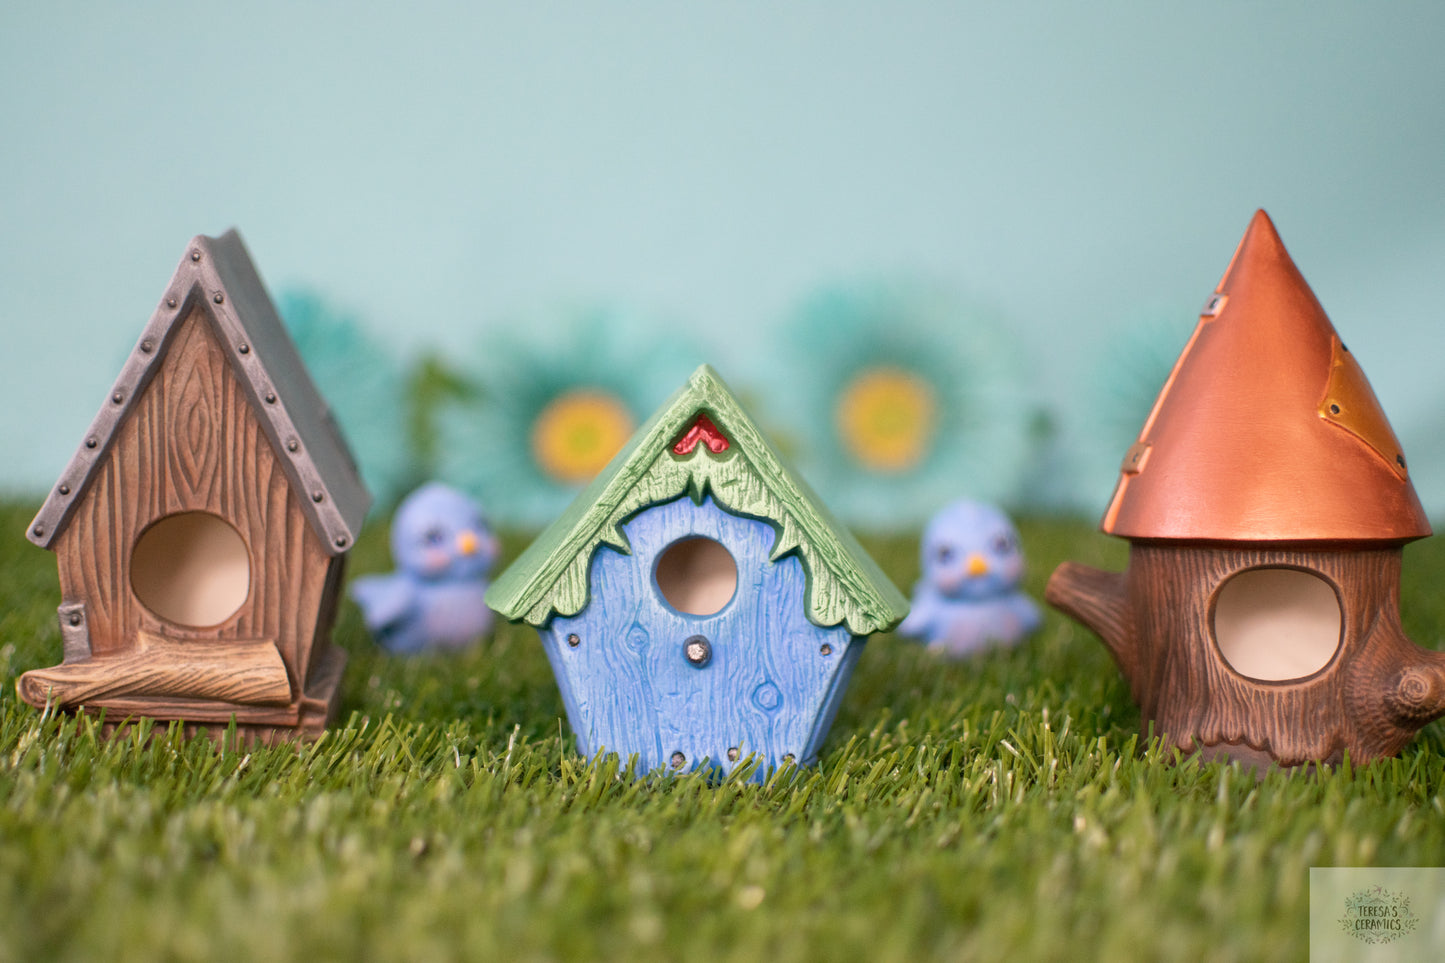 Ceramic Birdhouse | Birdhouse Garden Art | Yard Decor